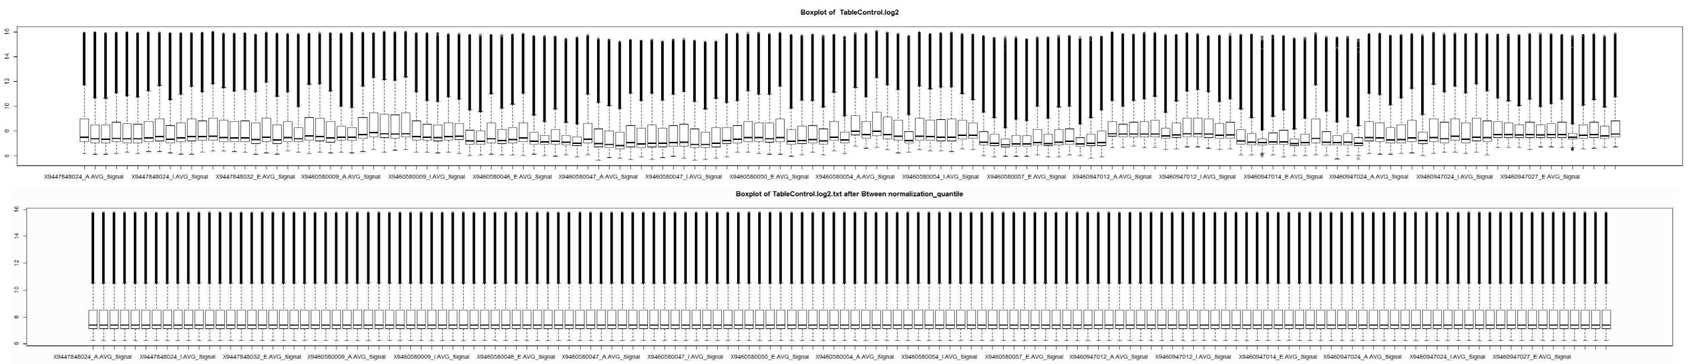 정규화 전후의 침윤성 방광암 유전자 발현의 box plots (n=136)